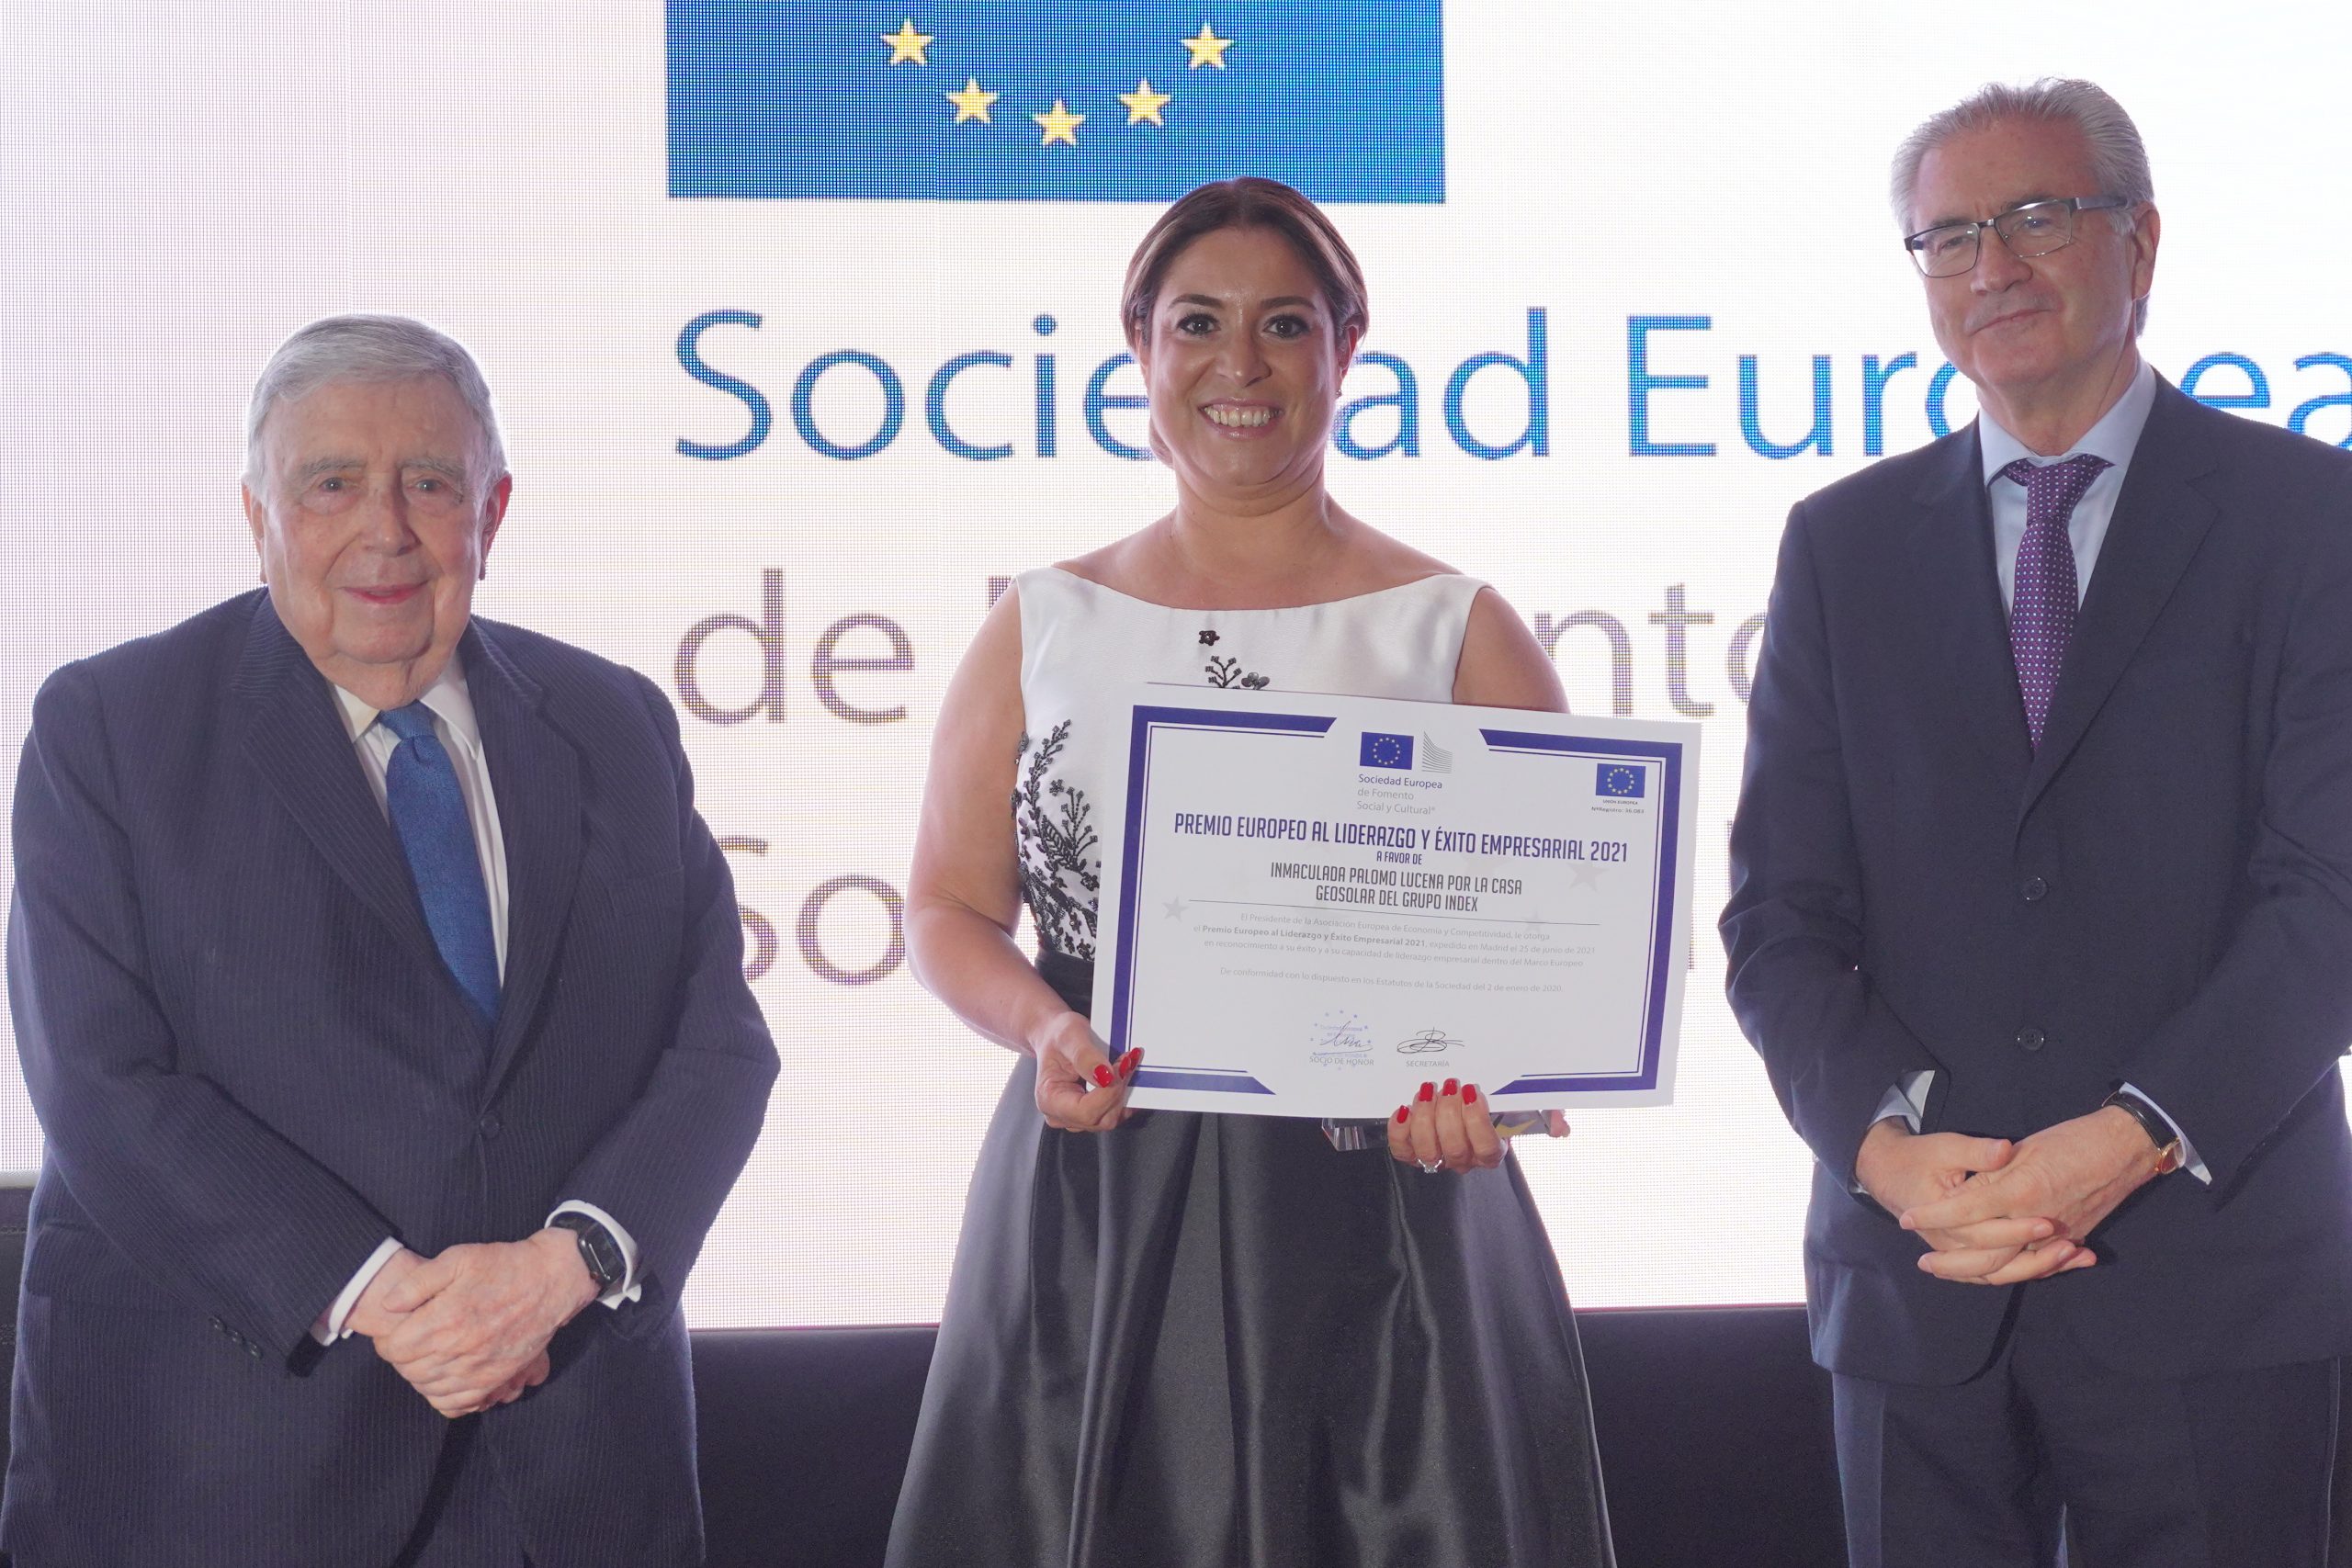 En este momento estás viendo Inmaculada Palomo recibe el Premio Europeo Liderazgo y Éxito Empresarial 2021 por la Casa Geosolar®